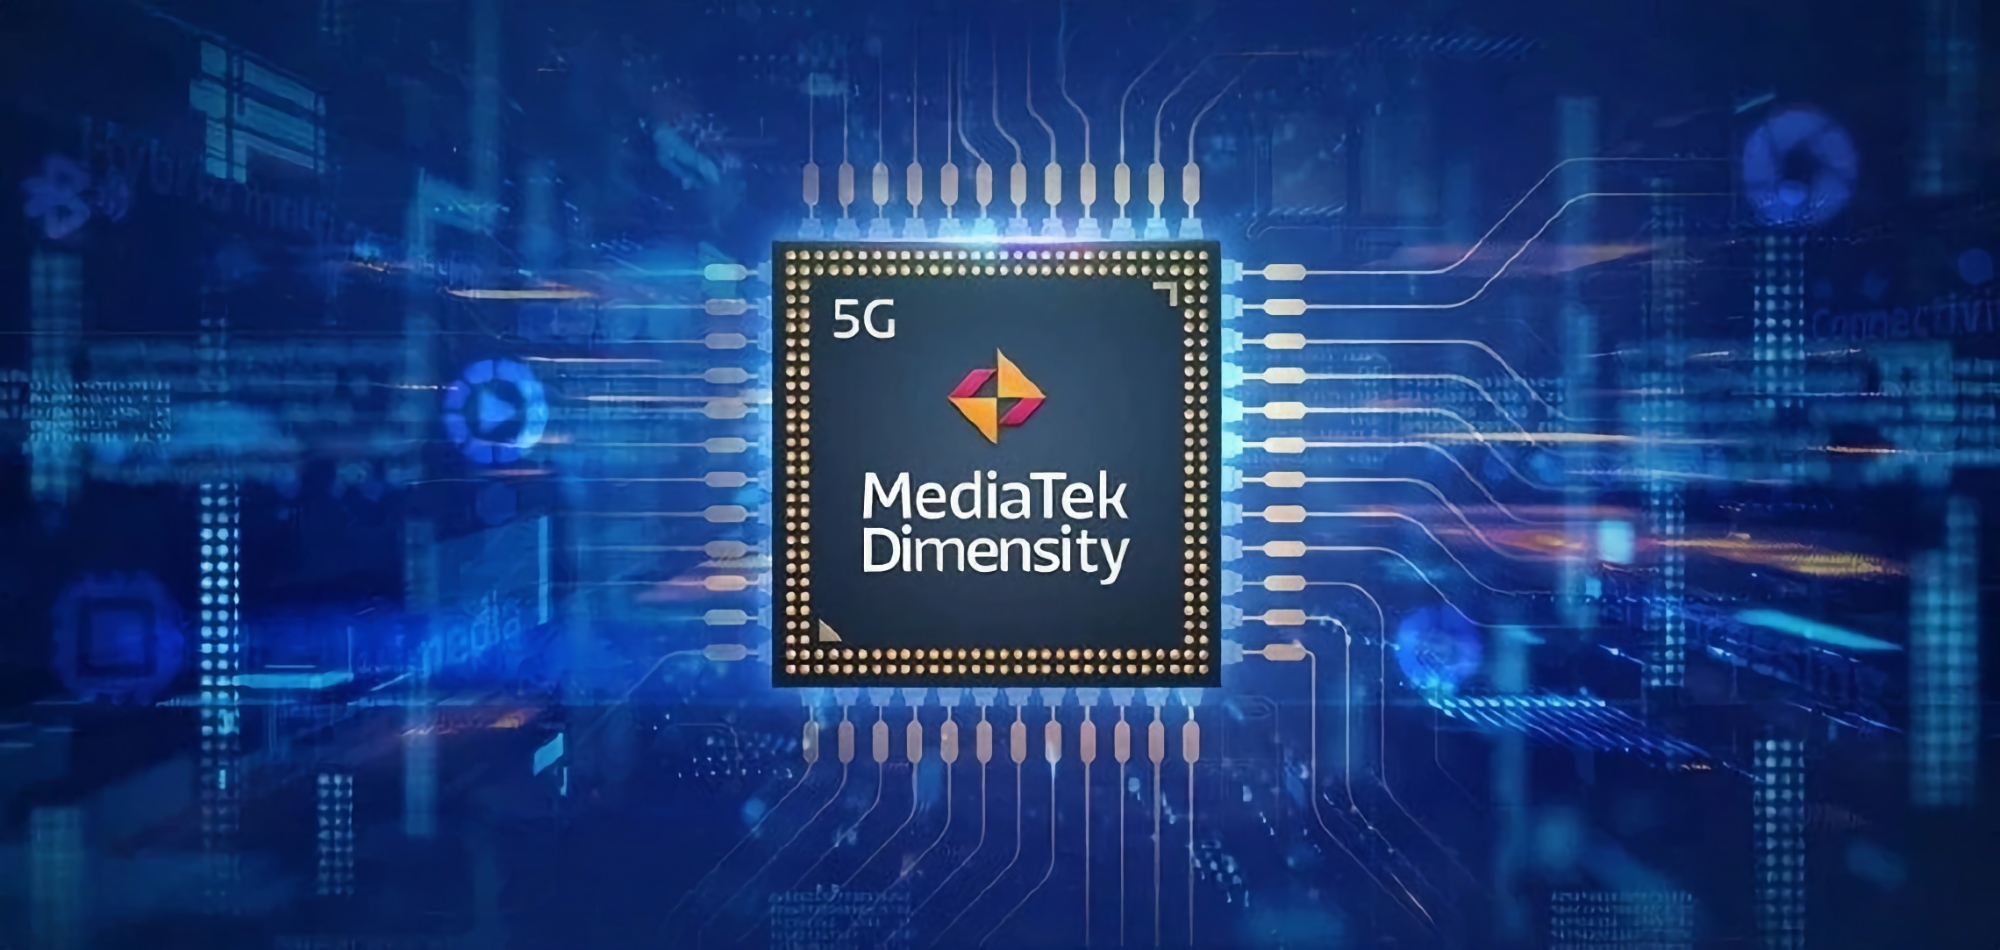 MediaTek développe une nouvelle puce phare Dimensity, qui sera fabriquée selon le procédé TSMC à 3 nanomètres.